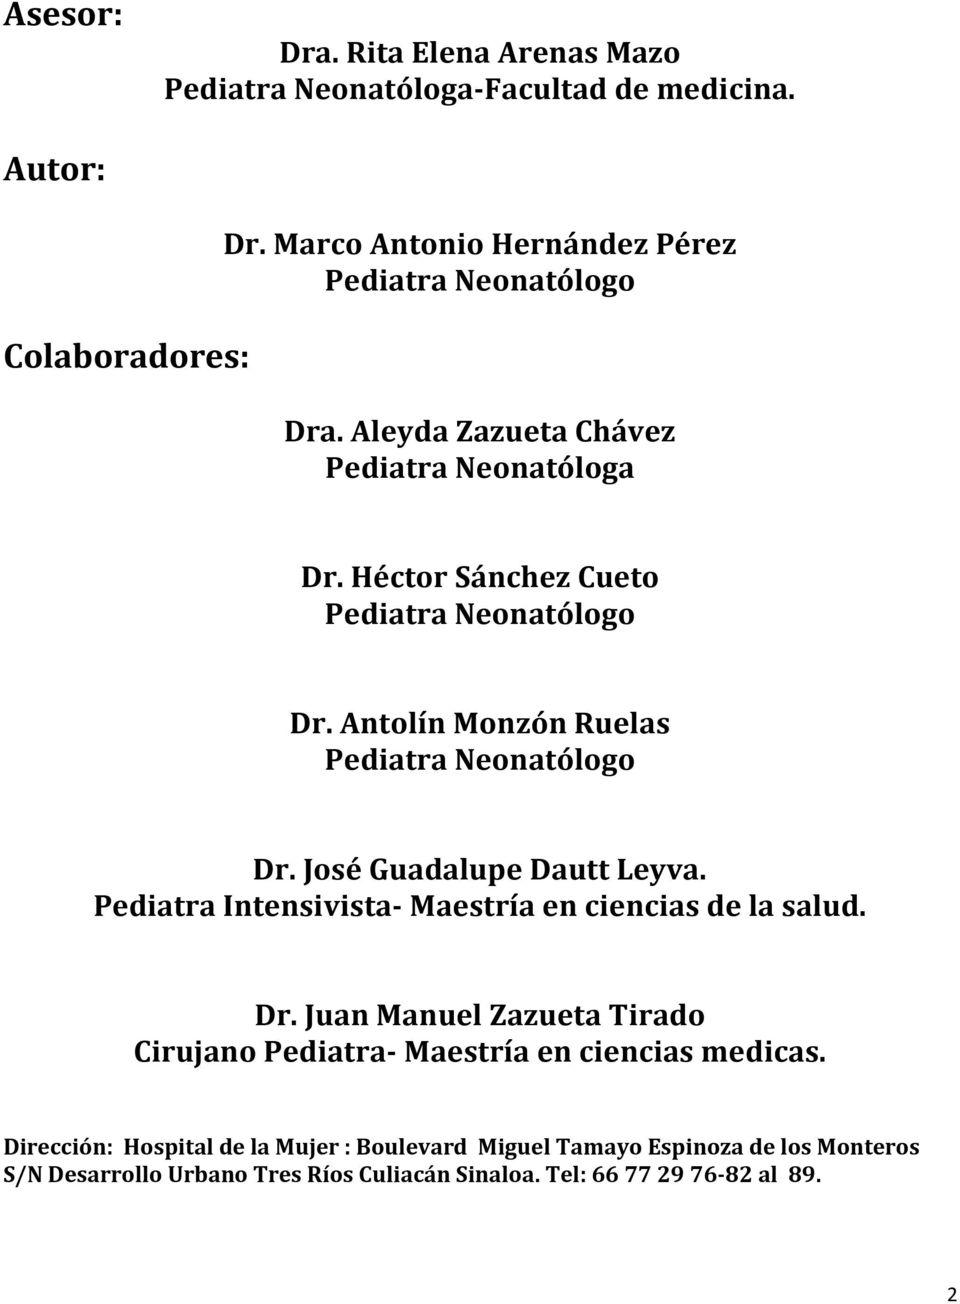 Antolín Monzón Ruelas Pediatra Neonatólogo Dr. José Guadalupe Dautt Leyva. Pediatra Intensivista- Maestría en ciencias de la salud. Dr. Juan Manuel Zazueta Tirado Cirujano Pediatra- Maestría en ciencias medicas.